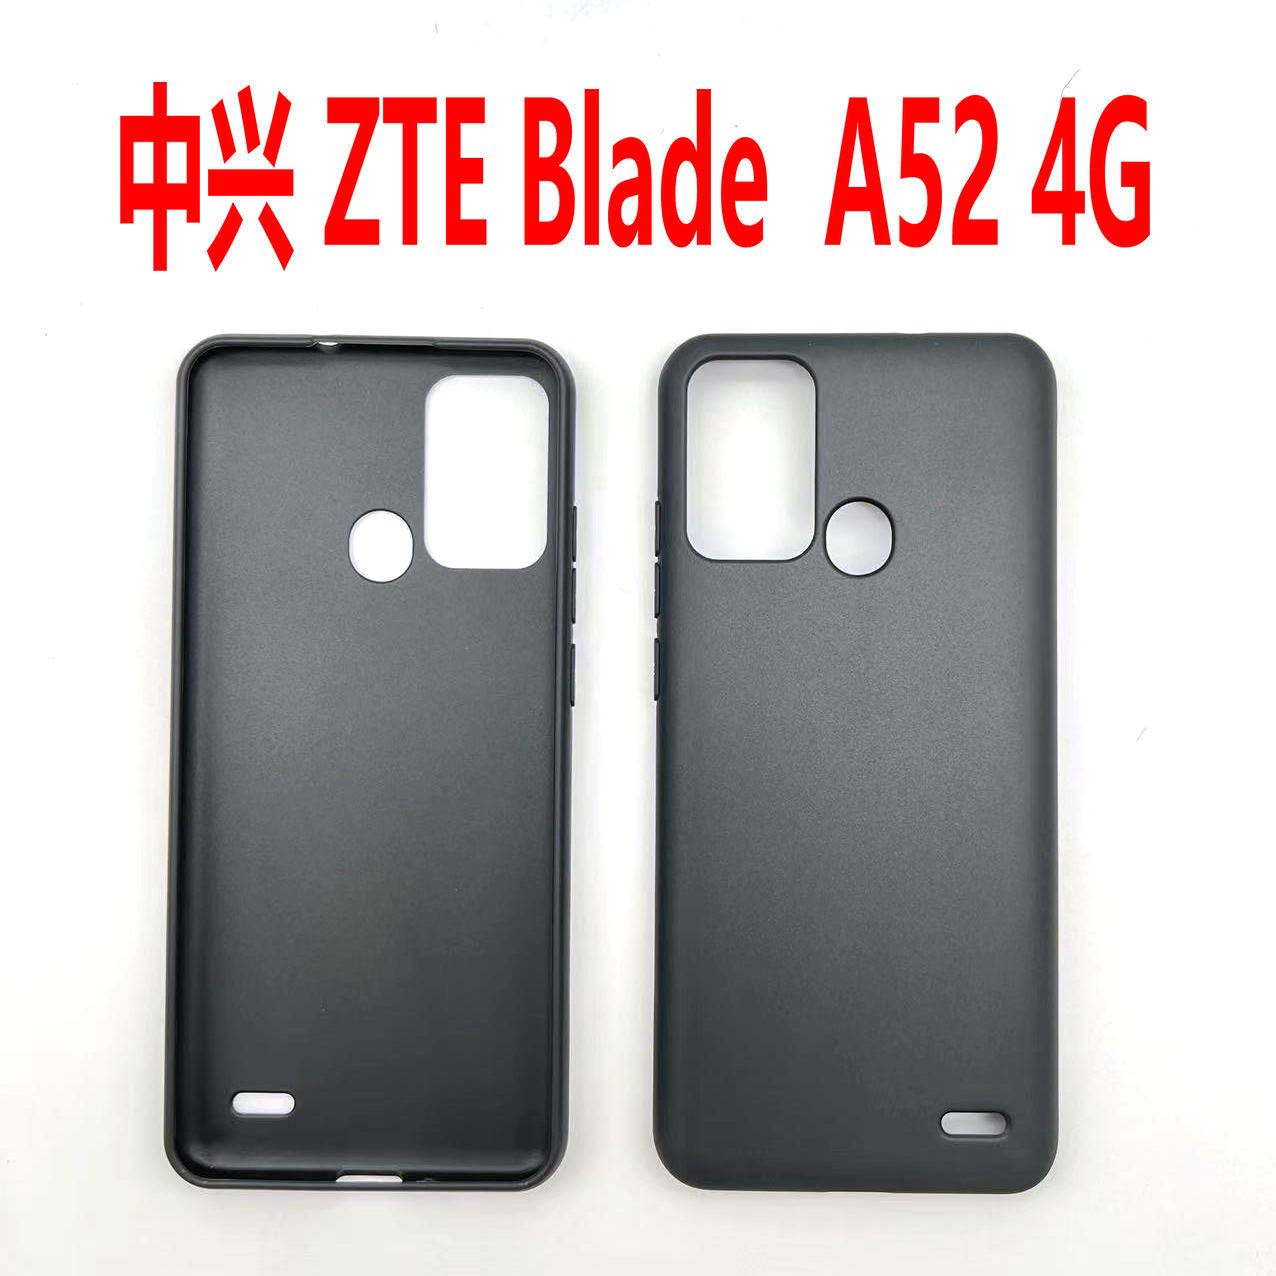 适用于中兴 ZTE Blade A52 4G 手机壳 TPU全磨砂皮套素材彩绘素